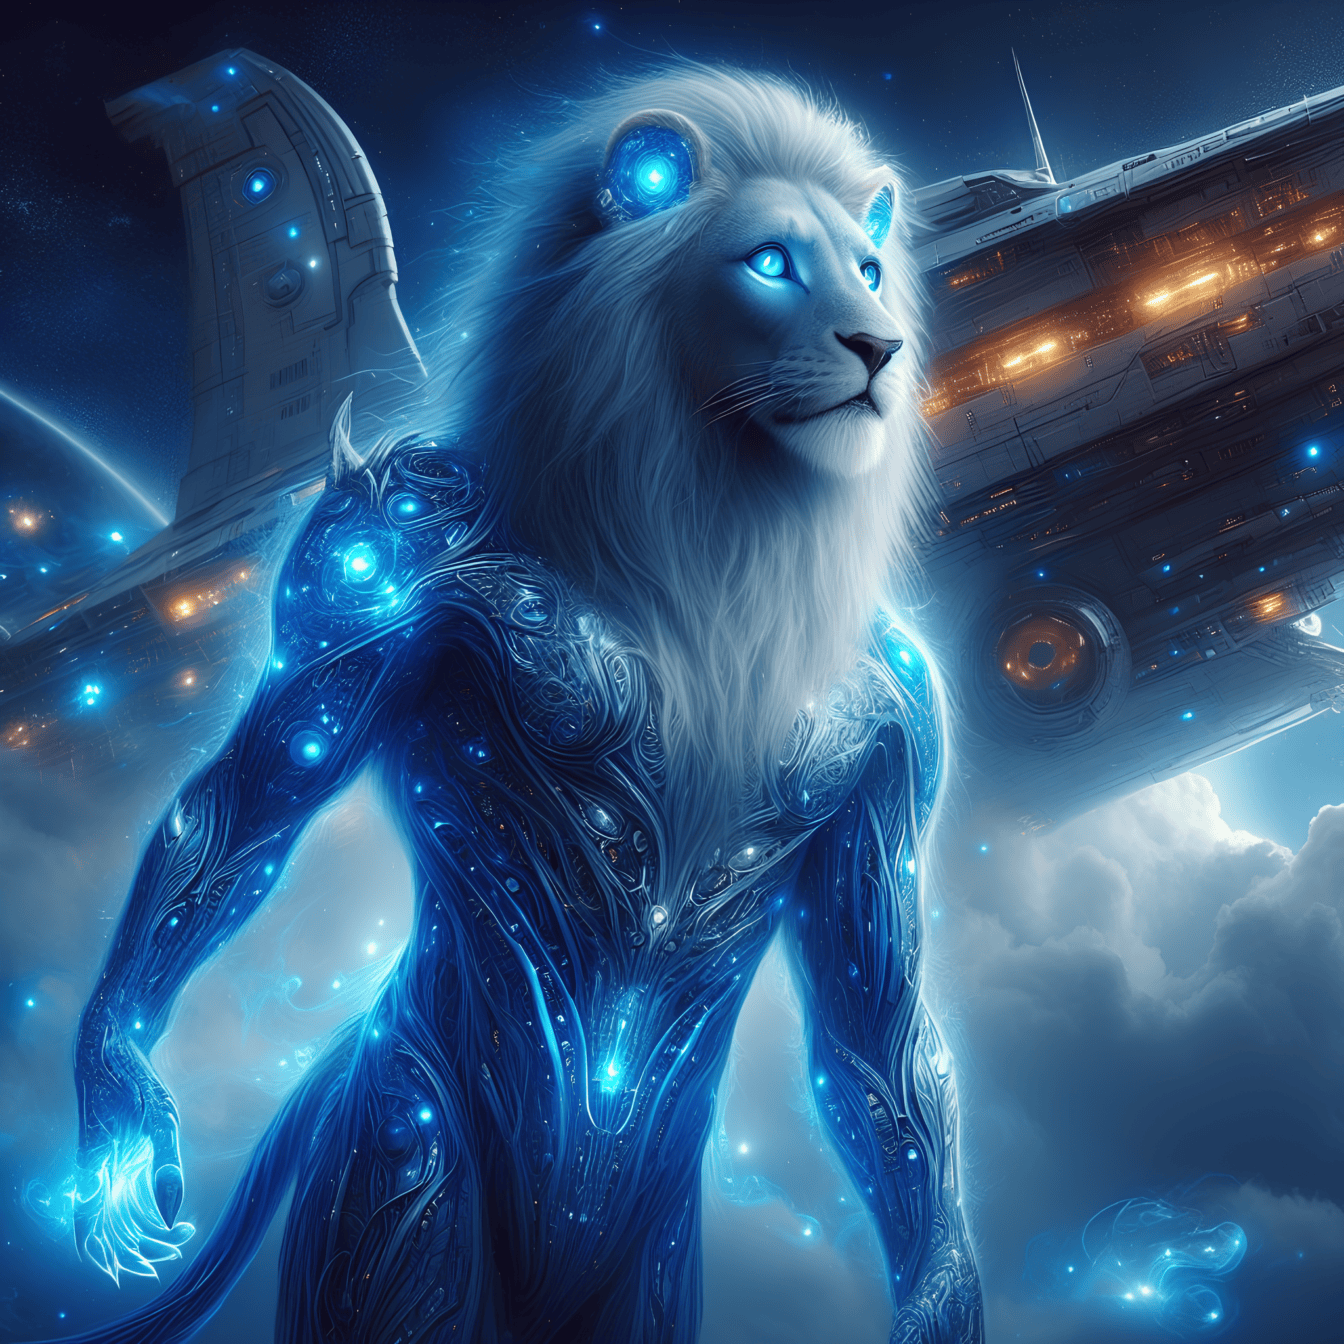 Tummansininen leijona-ulkomaalainen, maan ulkopuolinen humanoidi-kyborgi, jolla on hehkuvat silmät